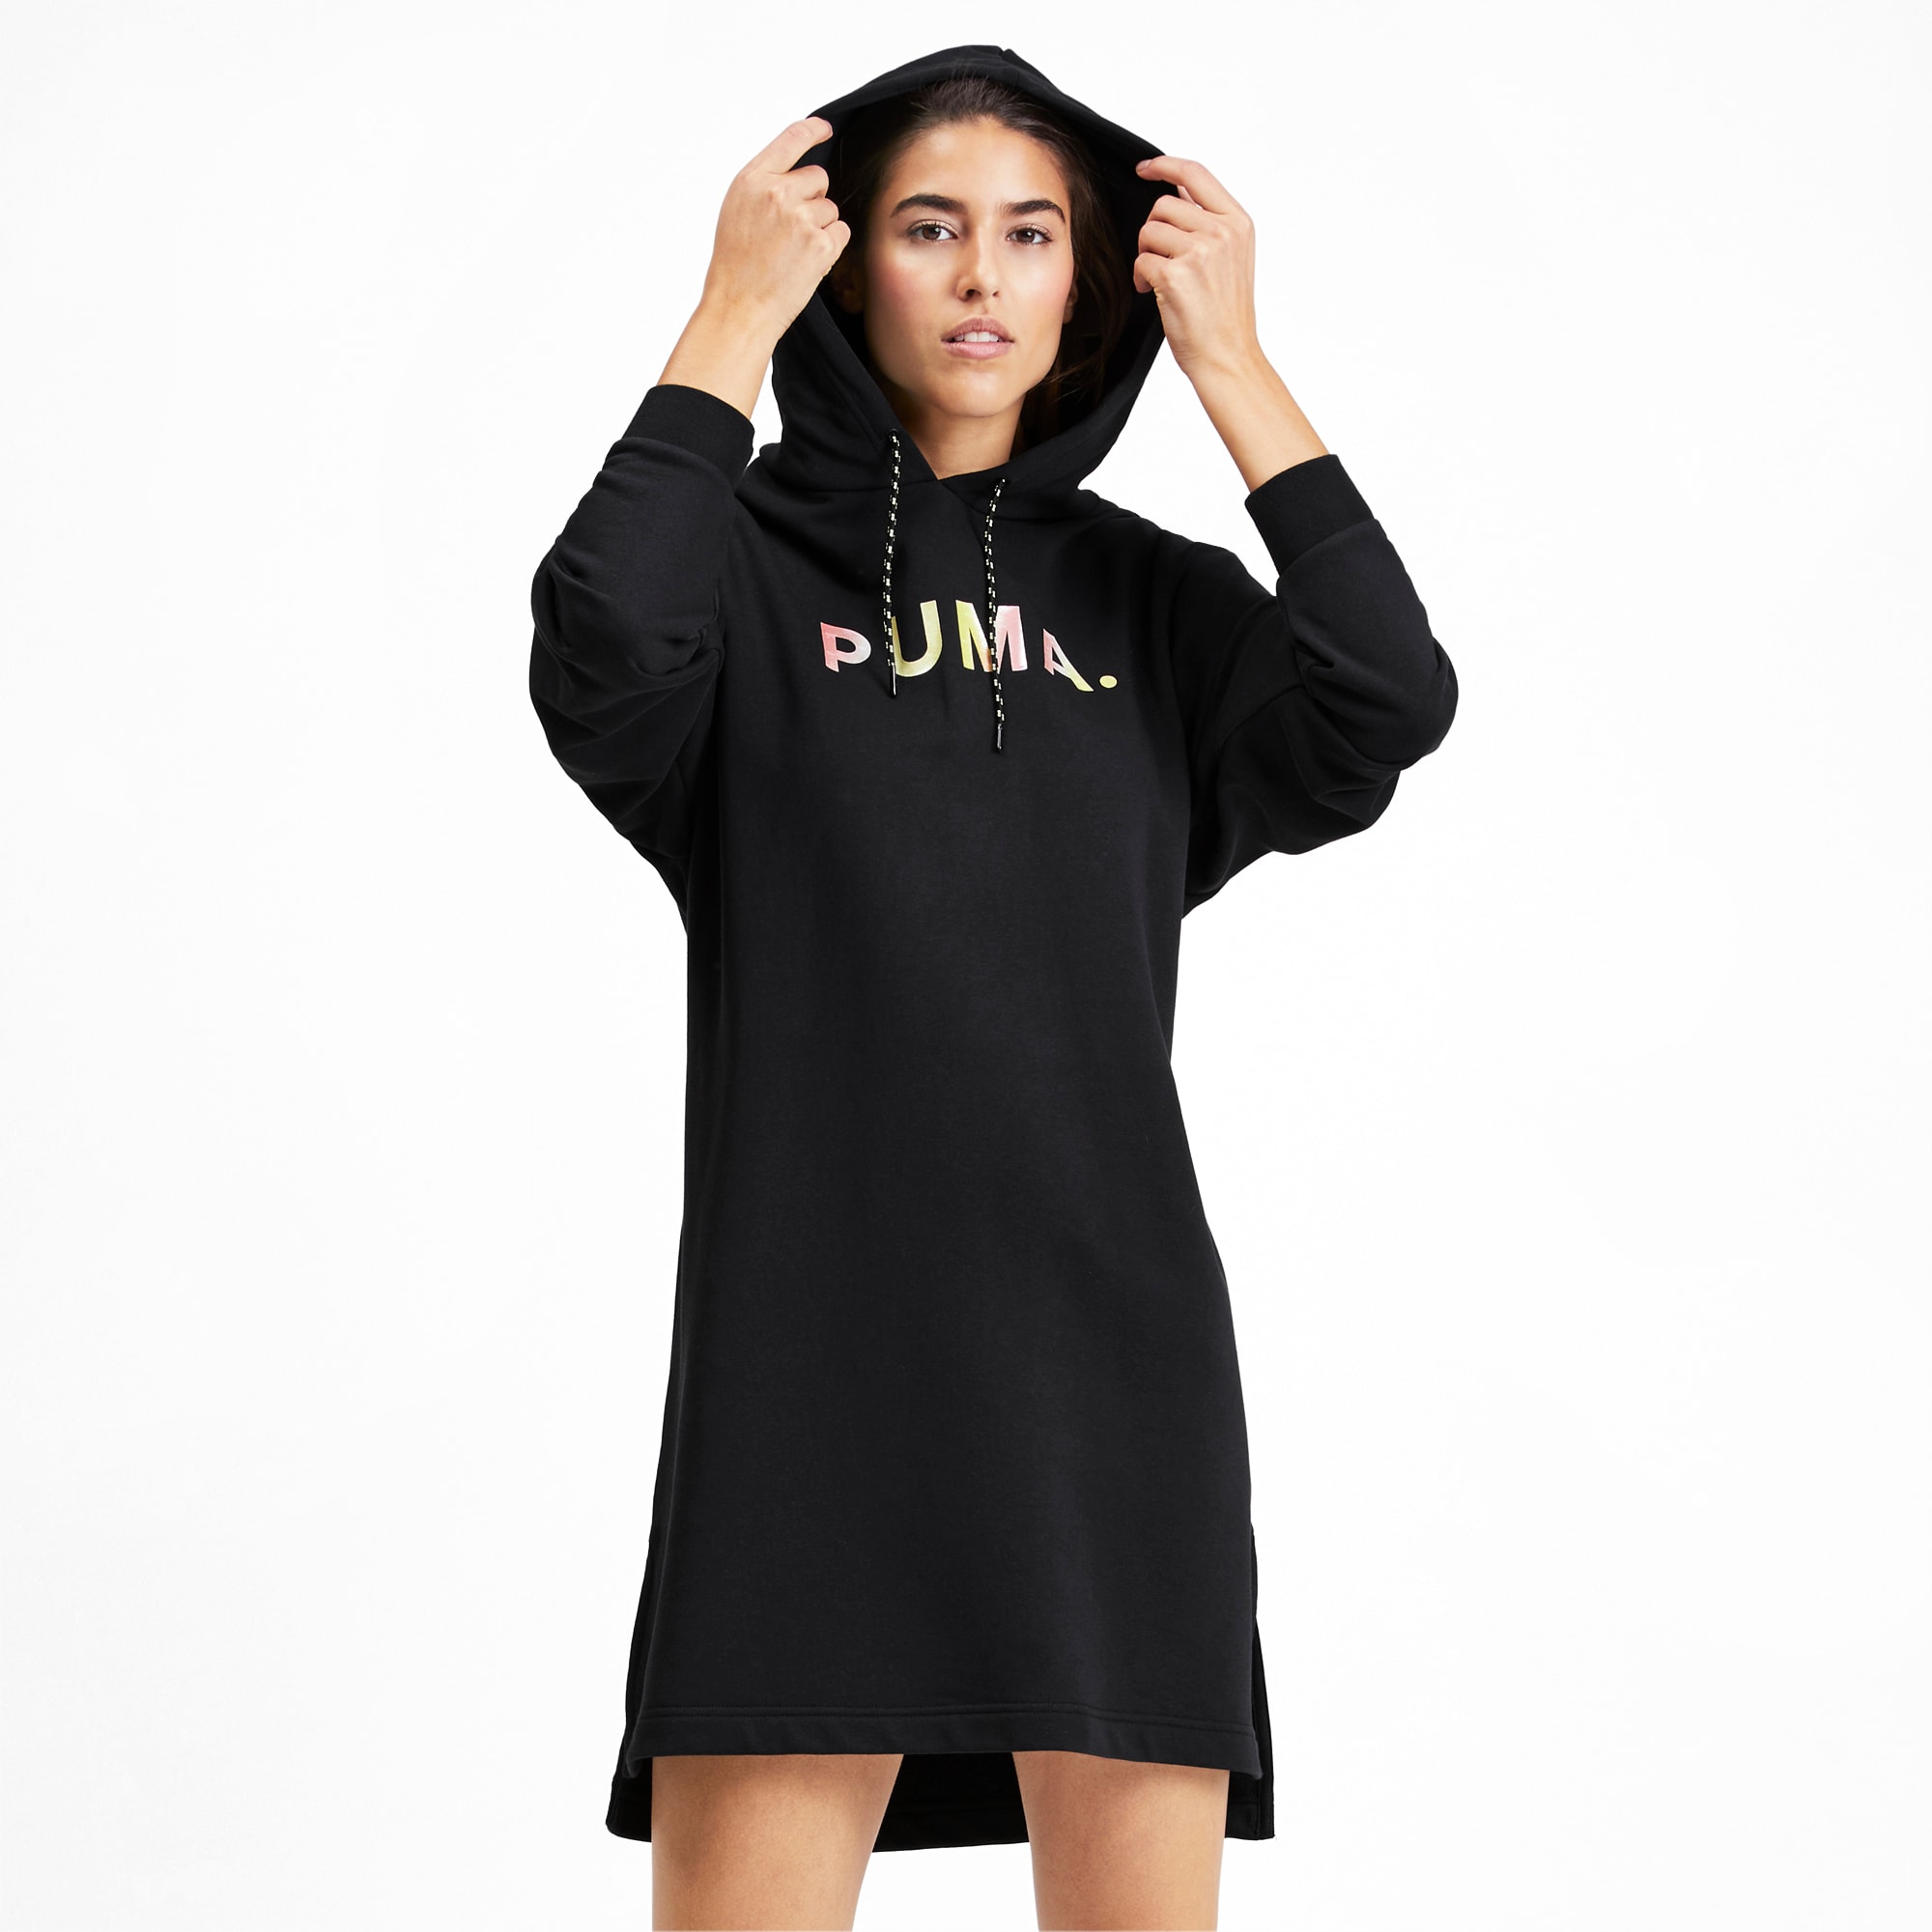 puma women wear